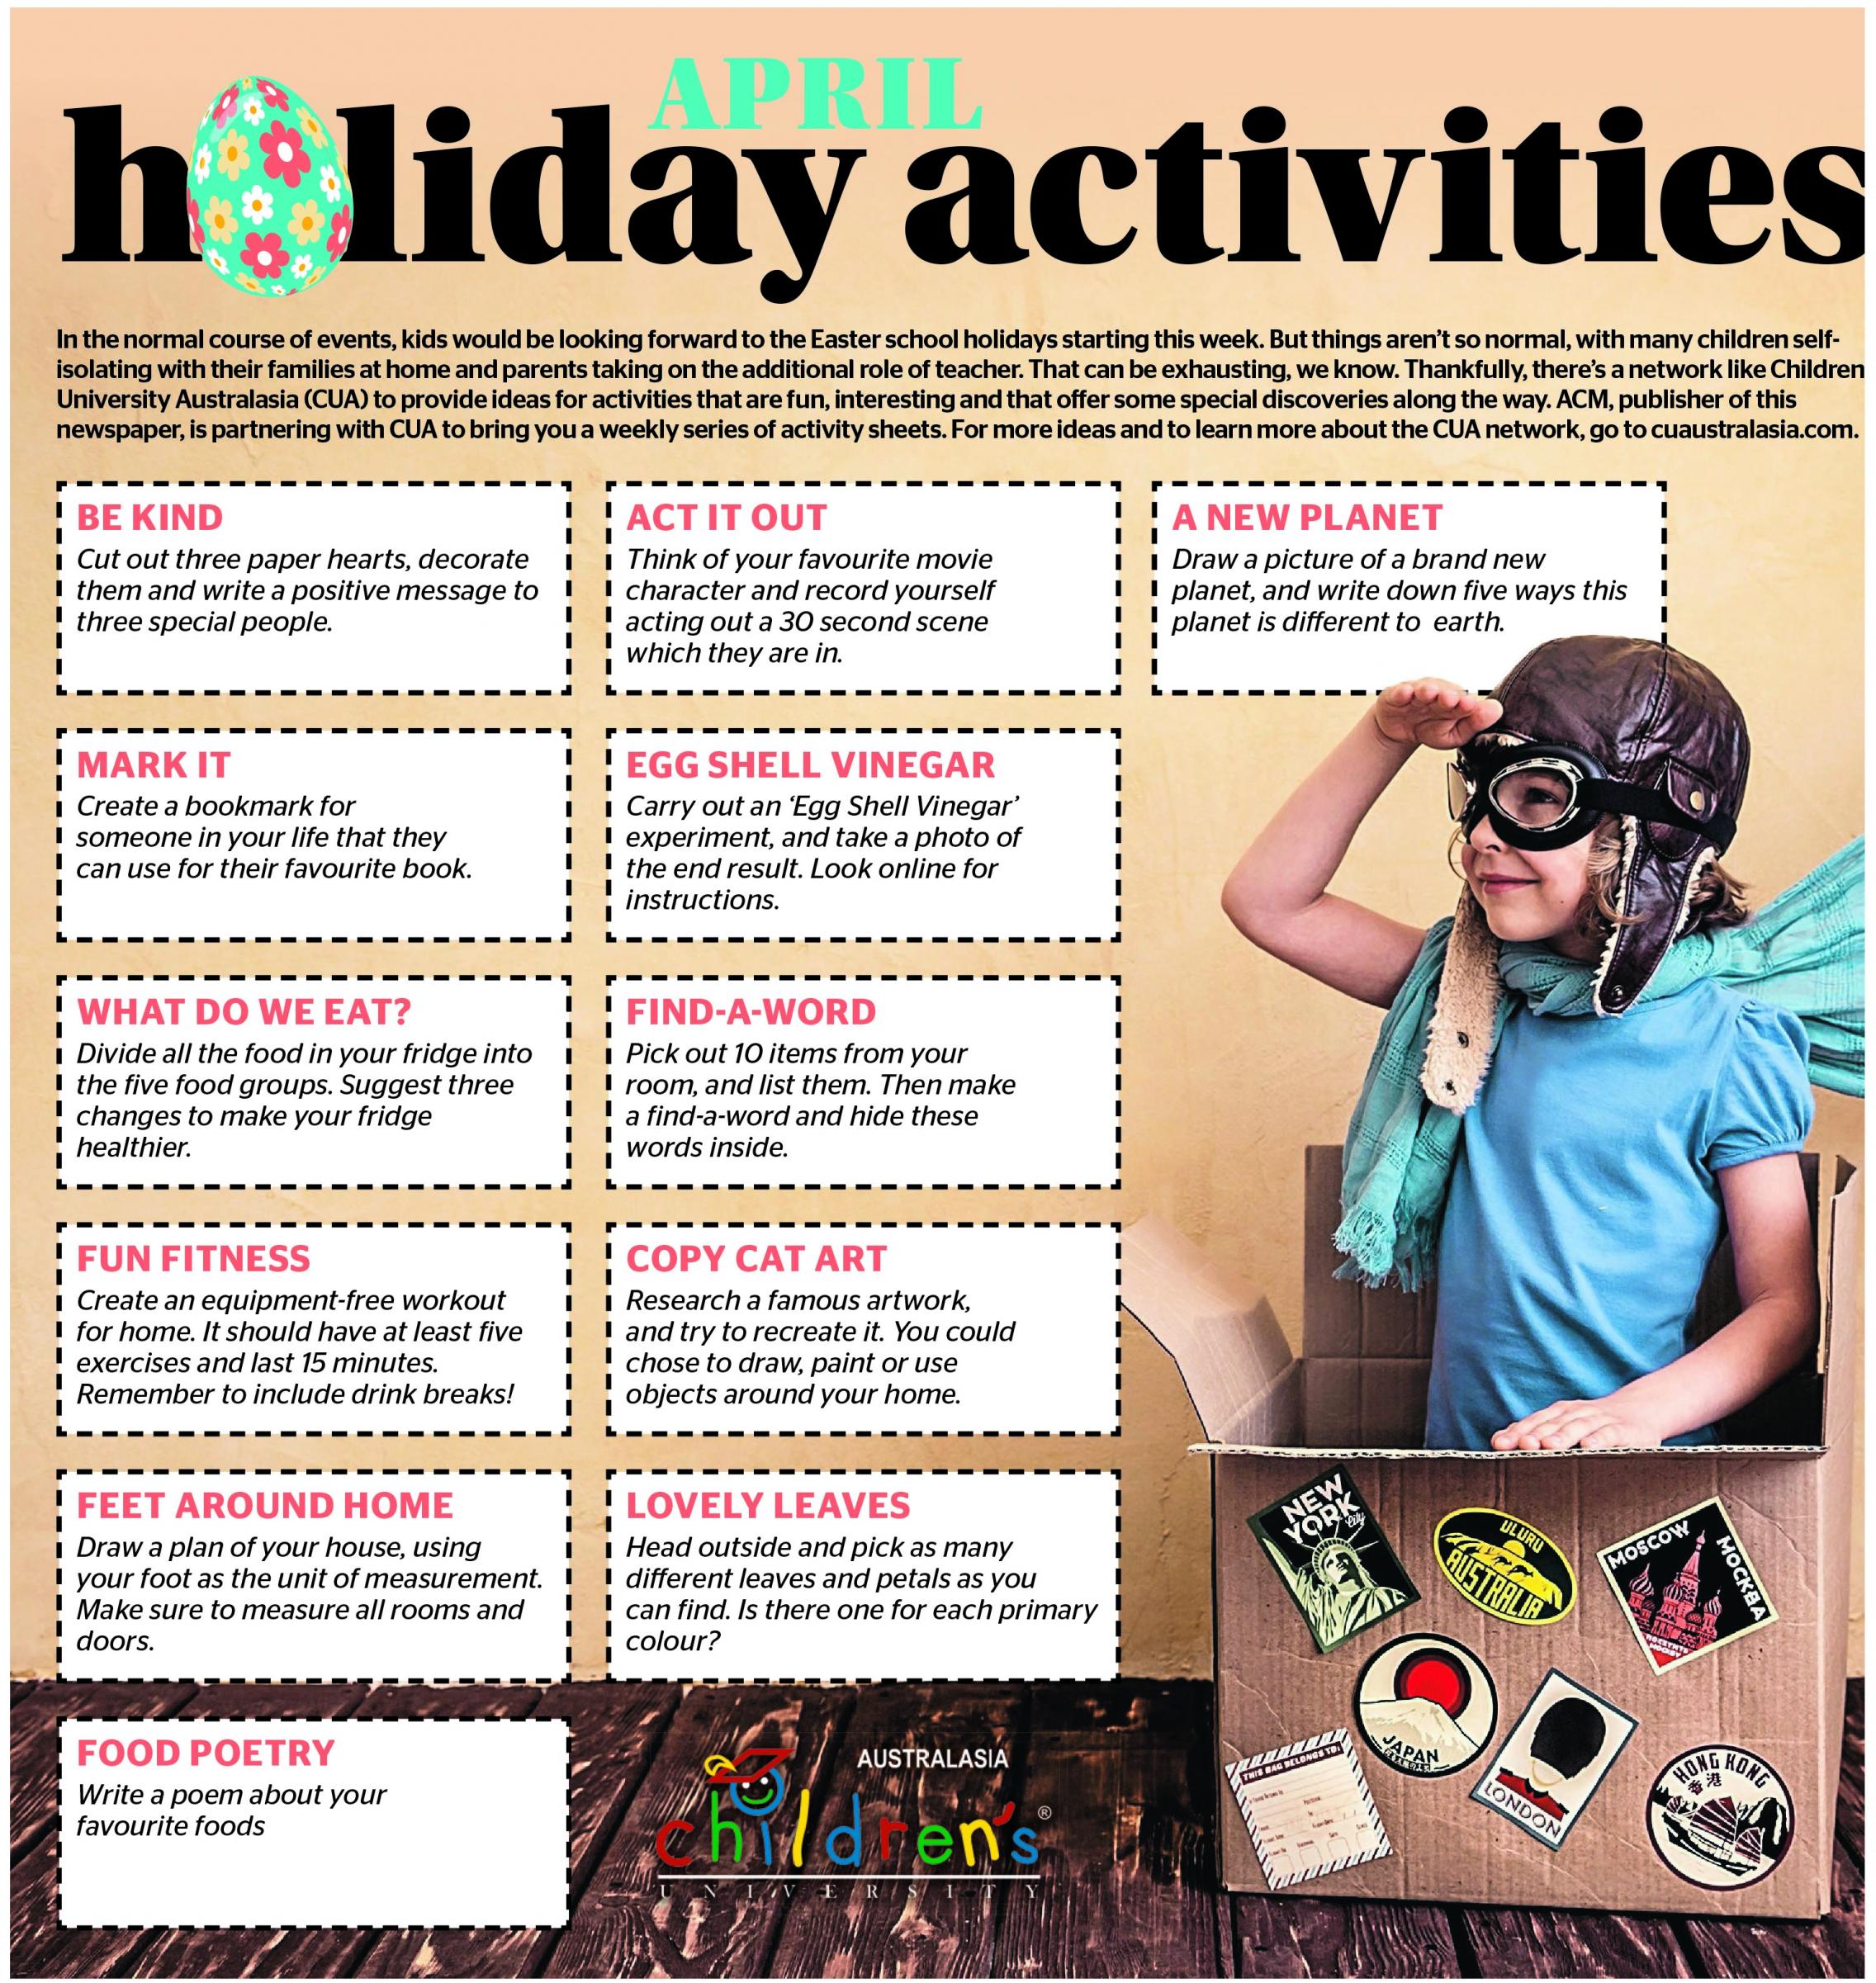 Holidays activities image